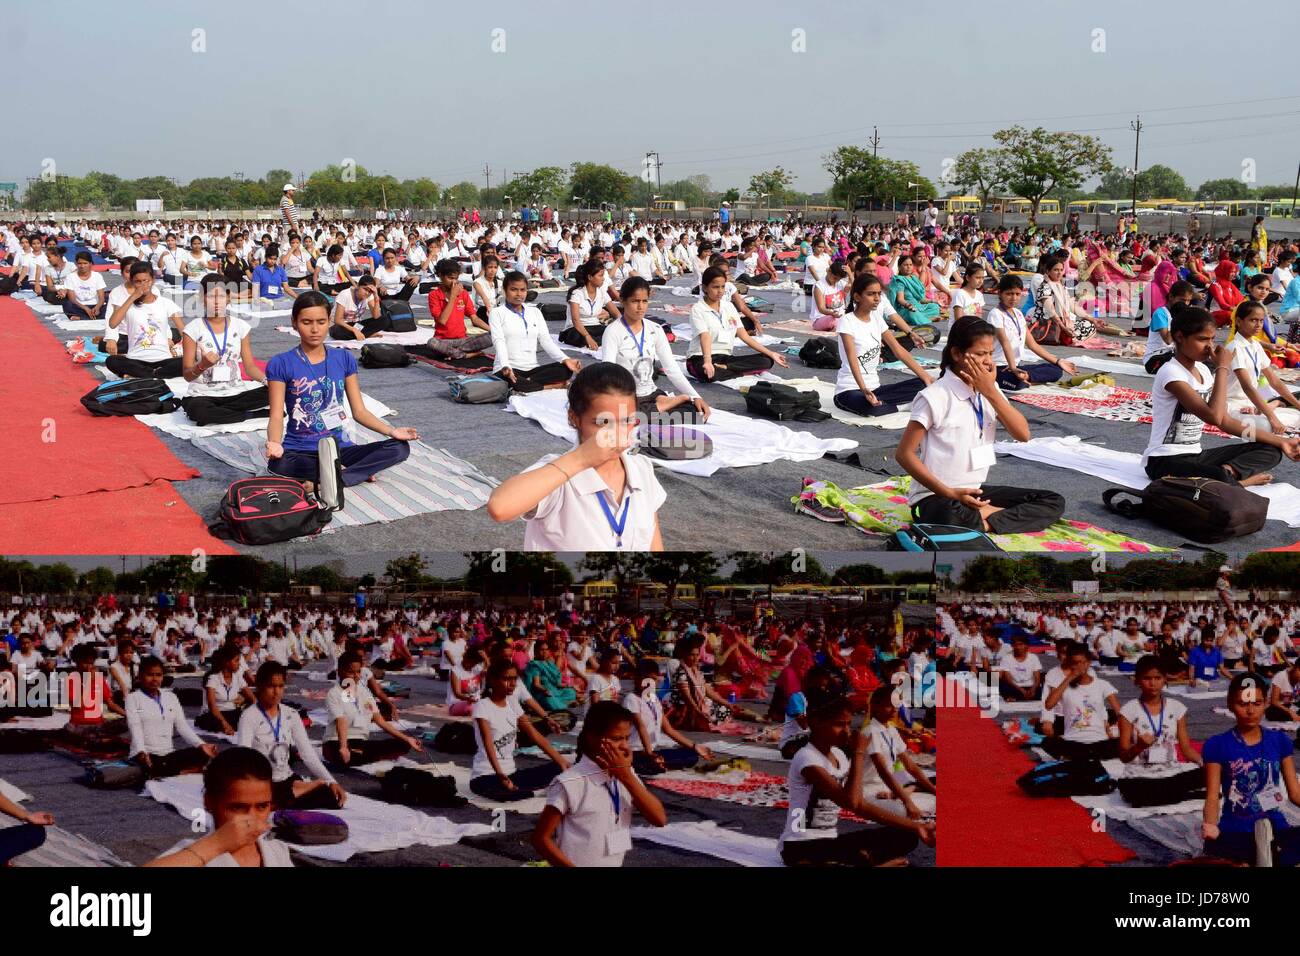 Giugno 19, 2017 - Allahabad, Uttar Pradesh, India - Allahabad: Studenti pratica Yoga davanti a ''International Yoga giorno'' in Allahabad su 19-06-2017, Giornata Internazionale di Yoga (Hindi: Antarastriya dive di Yoga), o comunemente e ufficiosamente indicato come giorno di Yoga, viene celebrata ogni anno il 21 giugno sin dal suo inizio nel 2015. Una giornata internazionale di yoga è stato dichiarato all'unanimità dall'Assemblea generale delle Nazioni Unite (AGNU) il 11 dicembre 2014. Lo Yoga è un fisico, mentale, e/o della pratica spirituale attribuito principalmente in India. Il Primo Ministro indiano Narendra modi nel suo indirizzo DELLE NAZIONI UNITE ha suggerito la Foto Stock